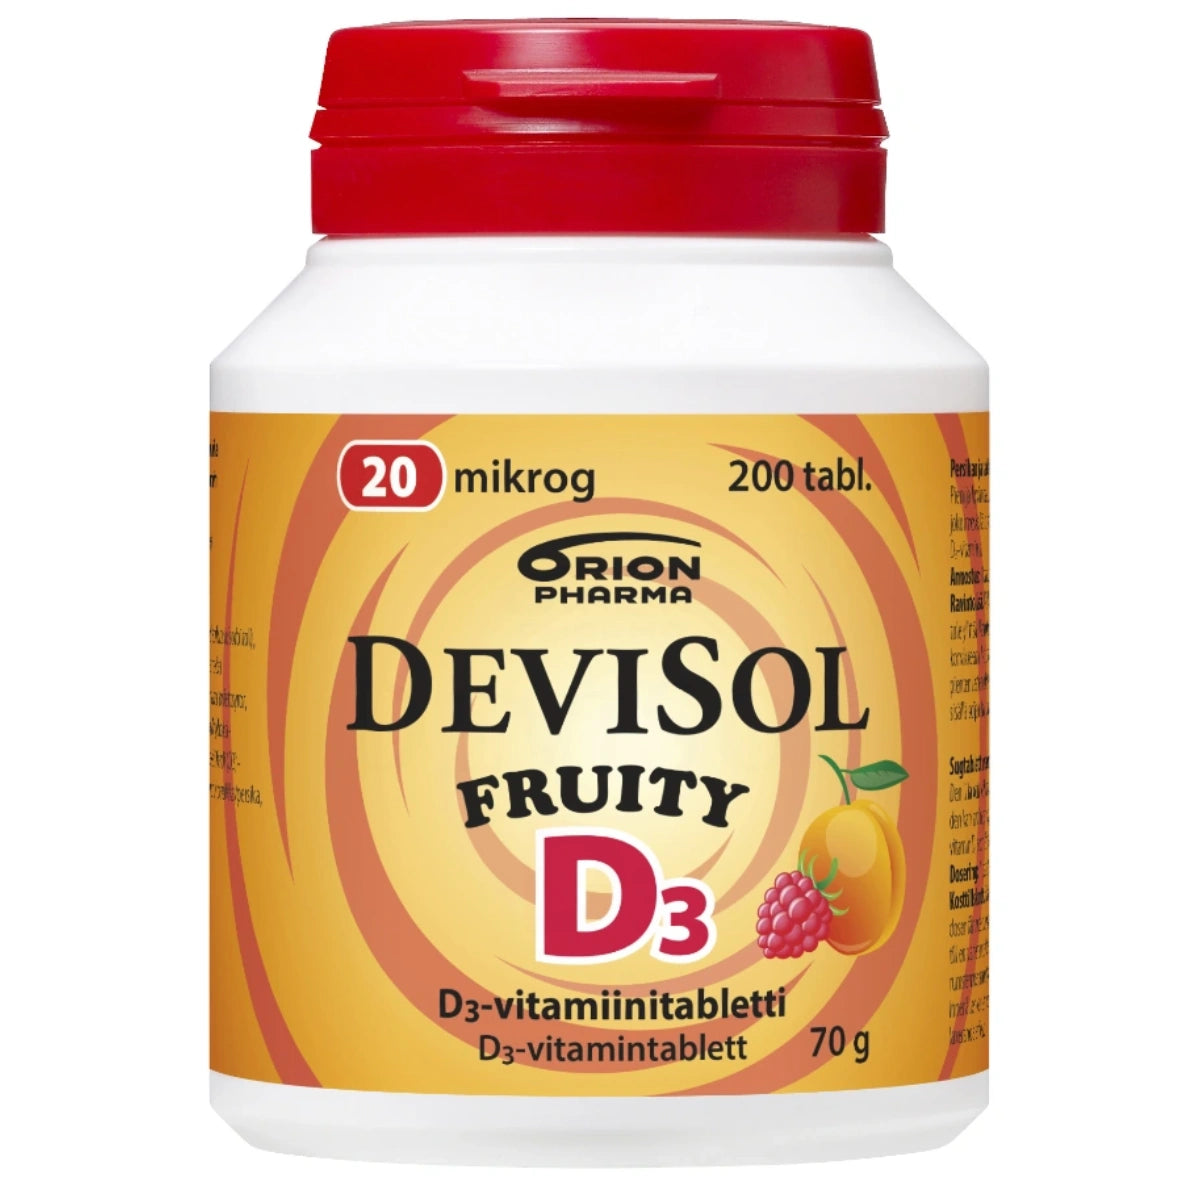 DEVISOL Fruity 20 mikrog imeskelytabletti 200 kpl hedelmäinen, persikan ja vadelman makuinen D3-vitamiinitabletti